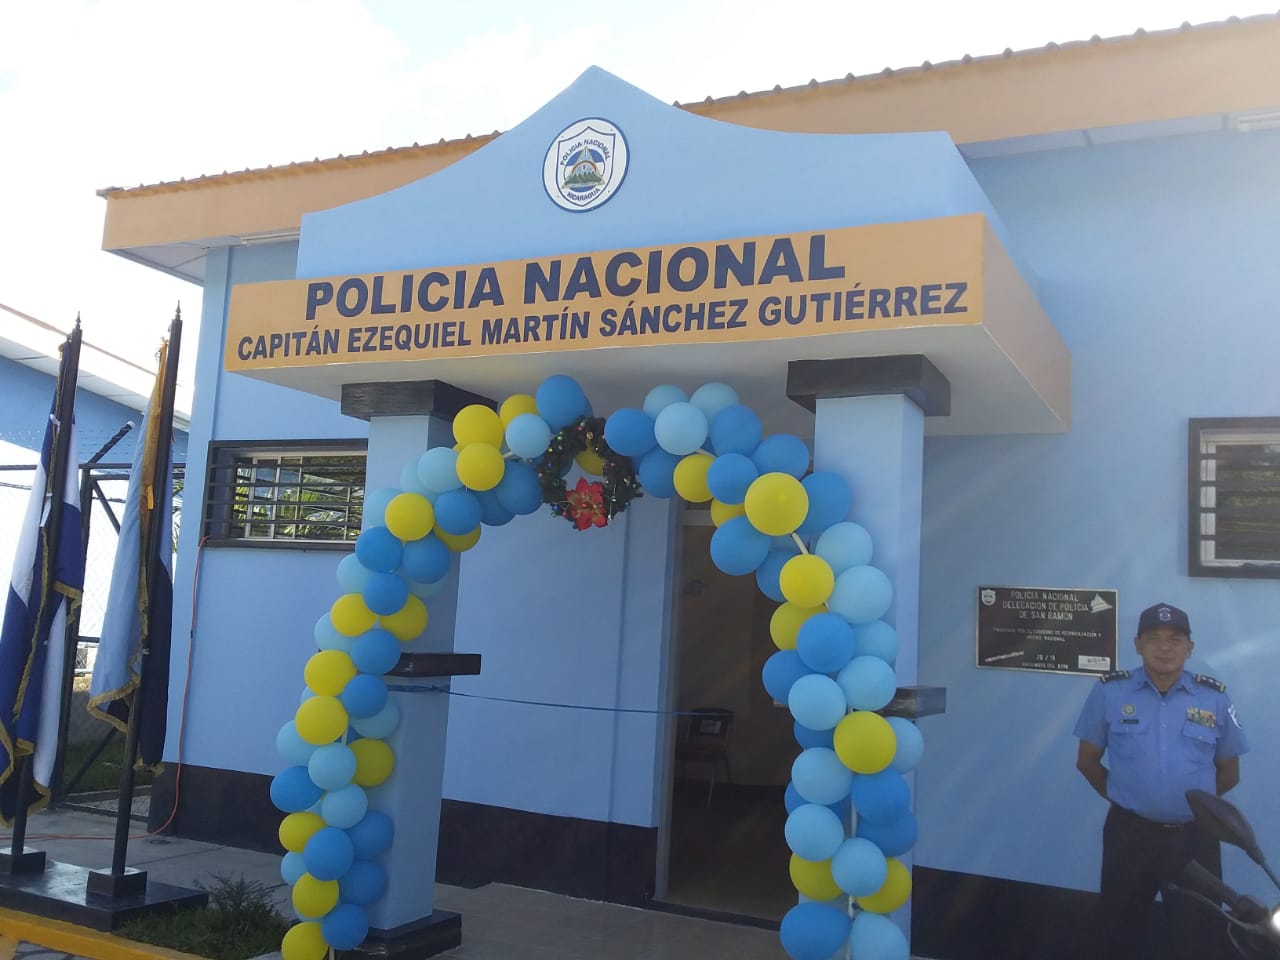 Nuevas instalaciones policiales estarán operando en San Ramón, Matagalpa